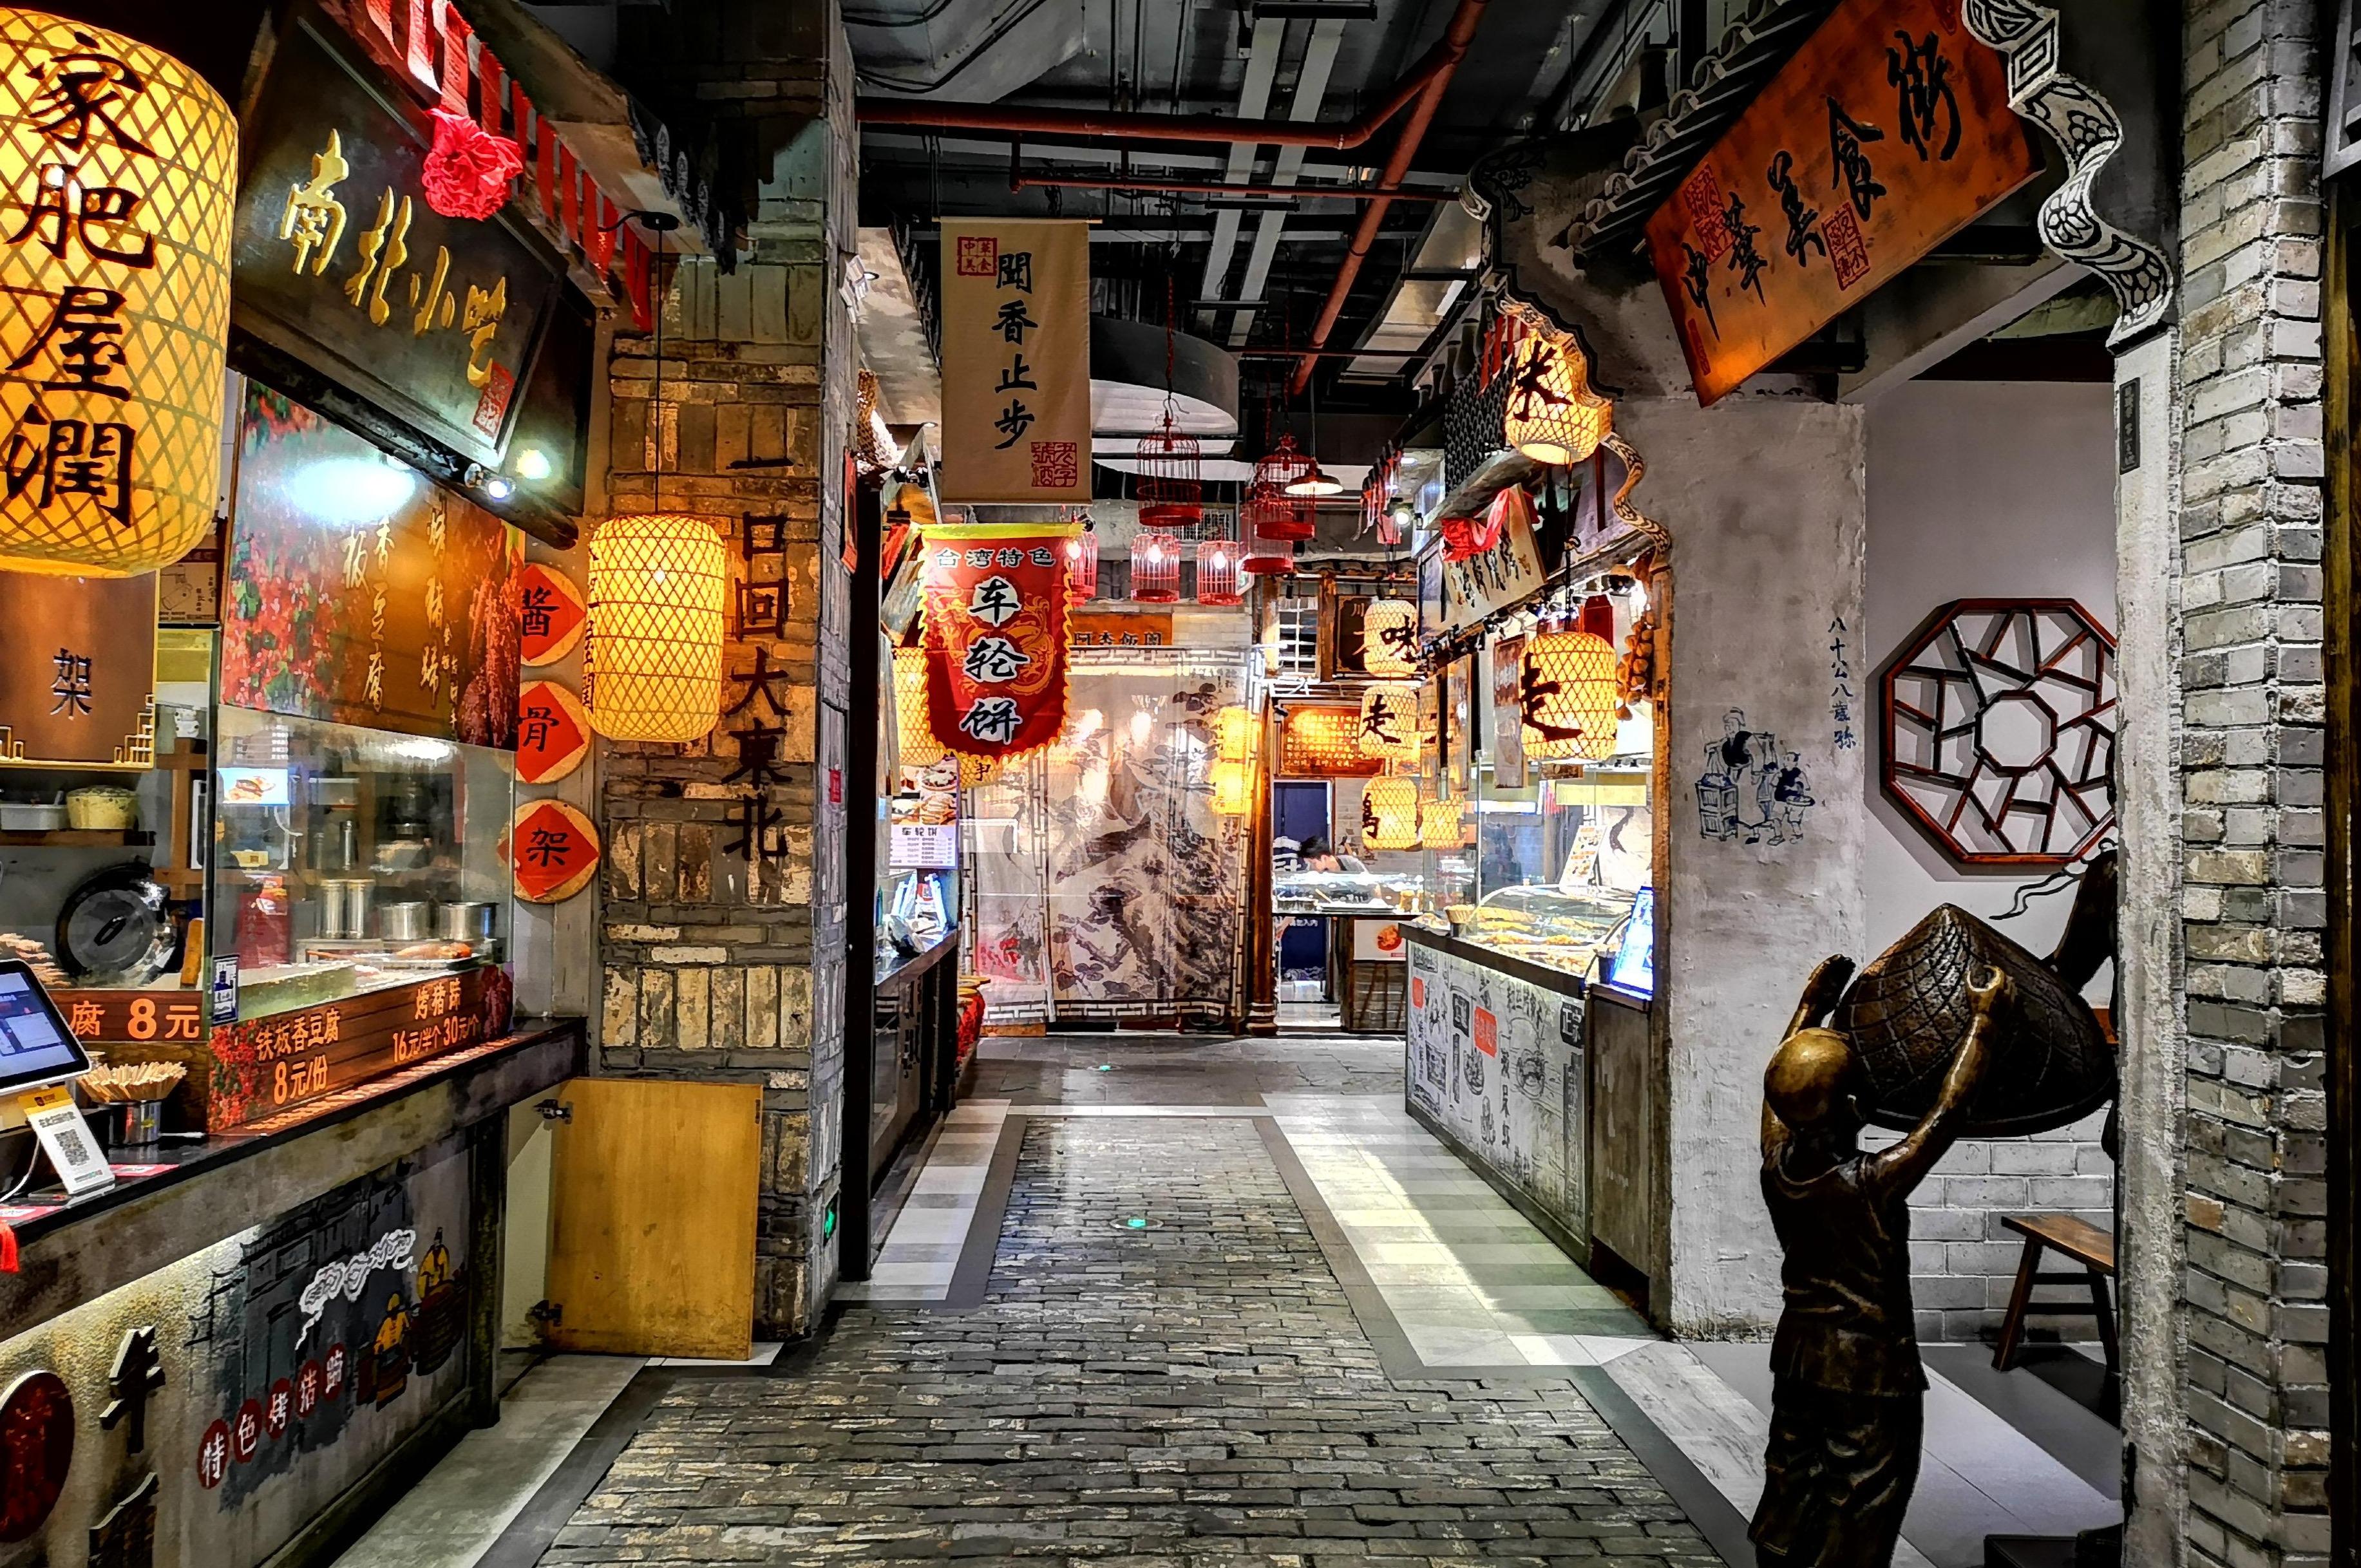 广州天河城地下美食街图片